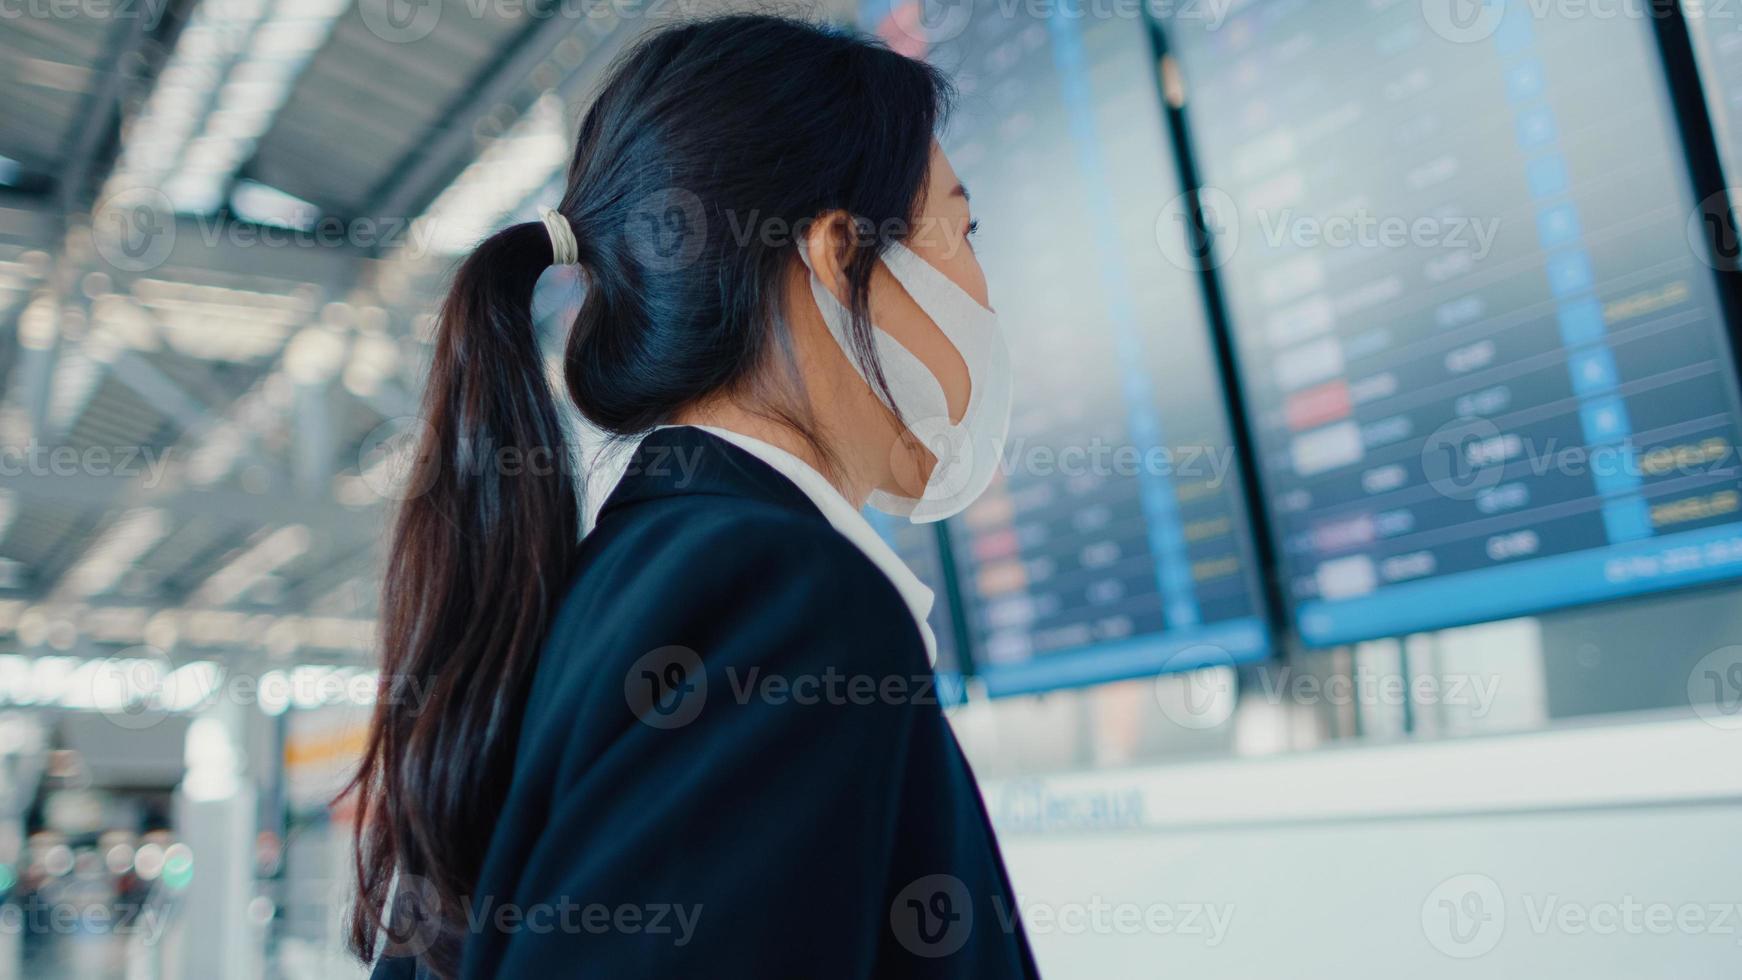 aziatisch zakenmeisje draagt een gezichtsmasker met een kofferstandaard voor het bord, kijk naar informatie die haar vlucht controleert op de internationale luchthaven. zakelijke forens covid pandemie, zakelijk reisconcept. foto